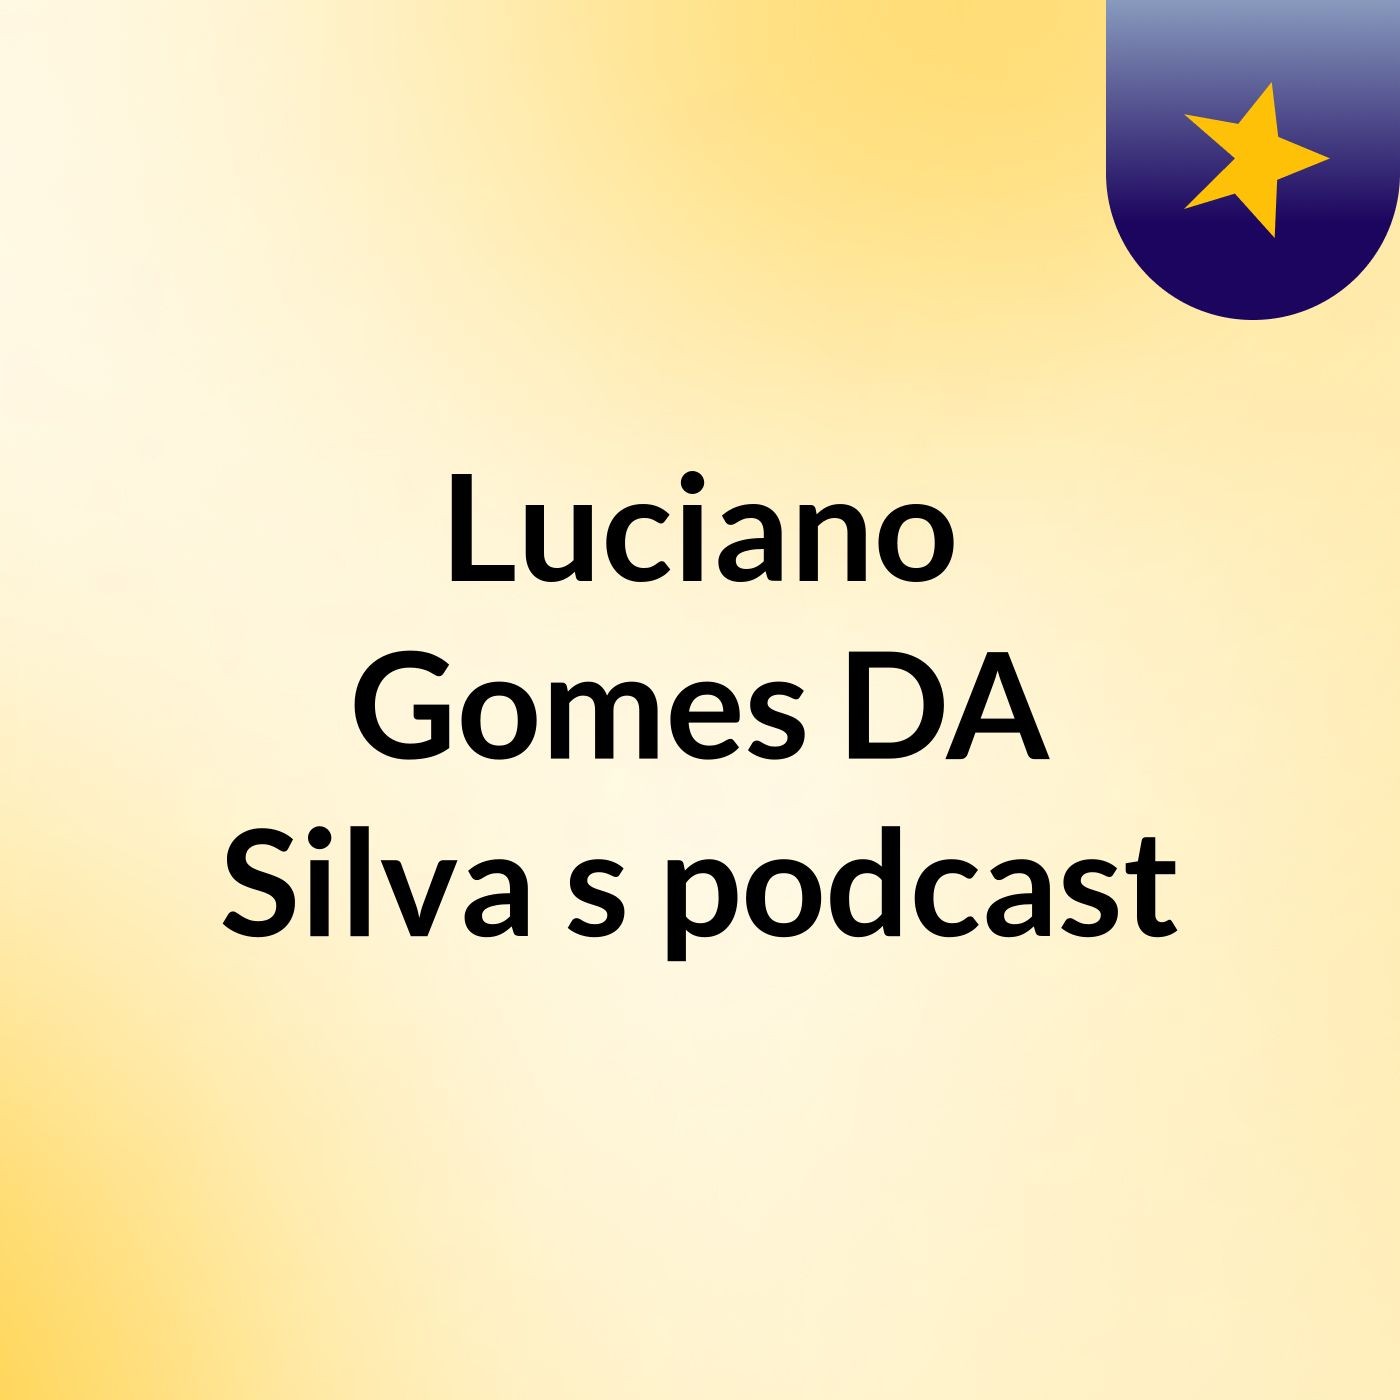 Luciano Gomes DA Silva's podcast